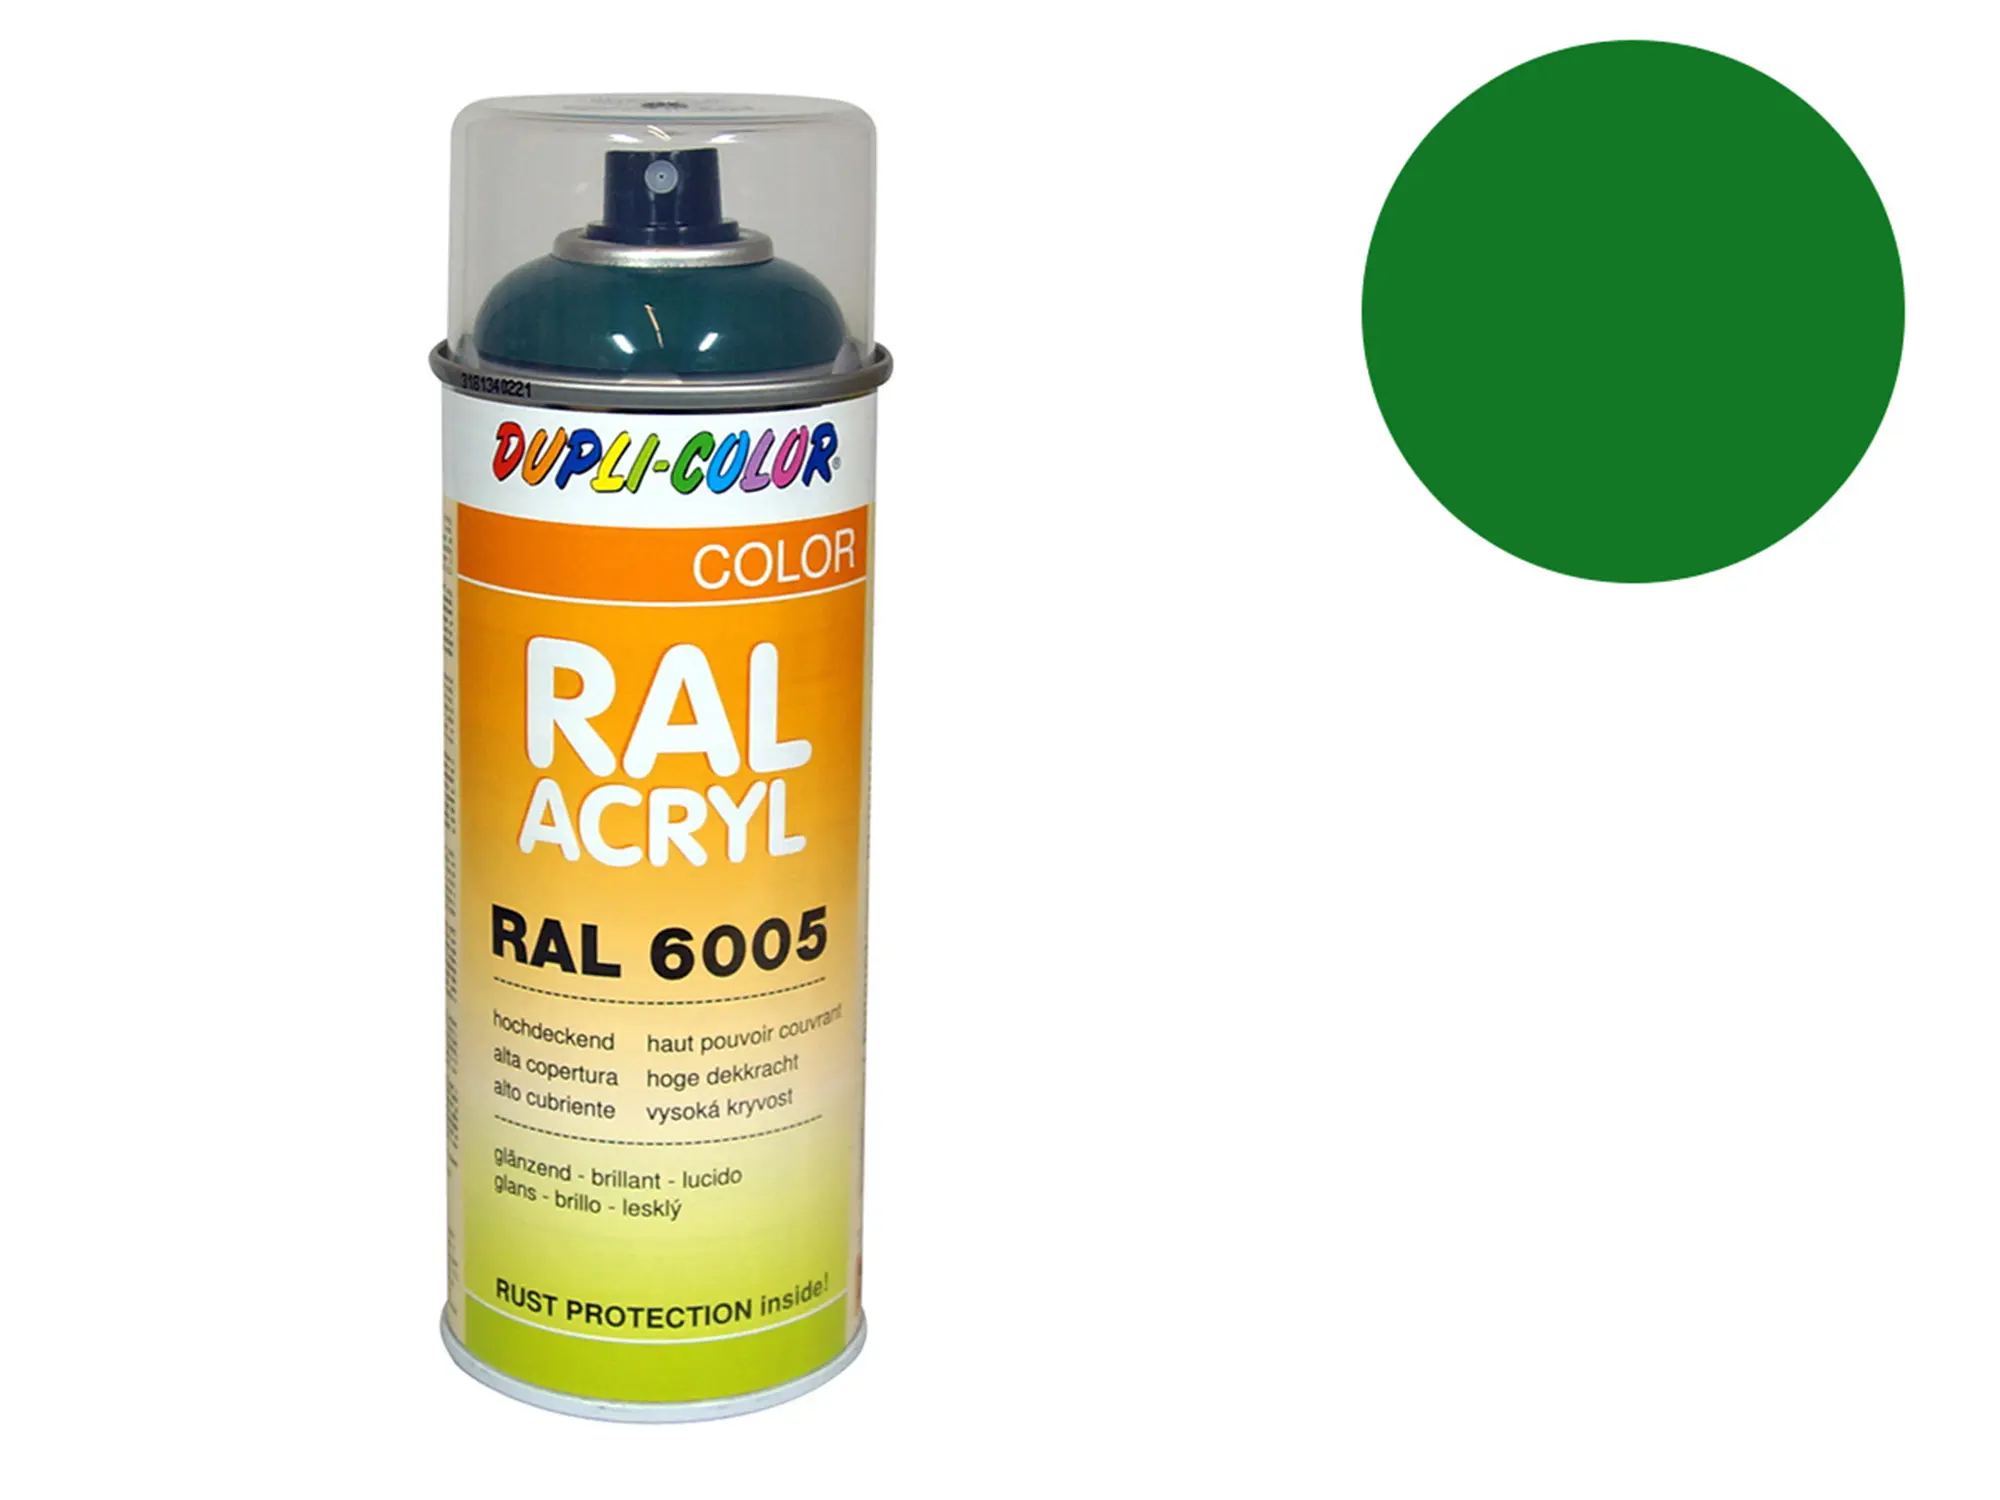 Dupli-Color Acryl-Spray RAL 6029 minzgrün, glänzend - 400 ml, Art.-Nr.: 10064830 - Bild 1